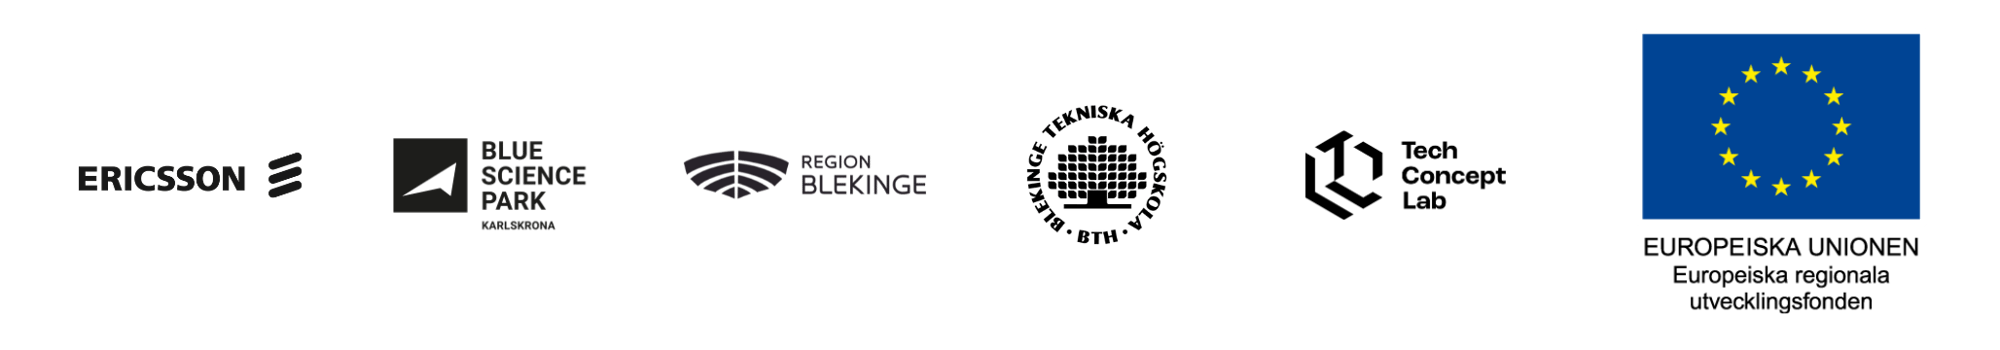 TCL finansiärernas logos (2056 × 360 px)